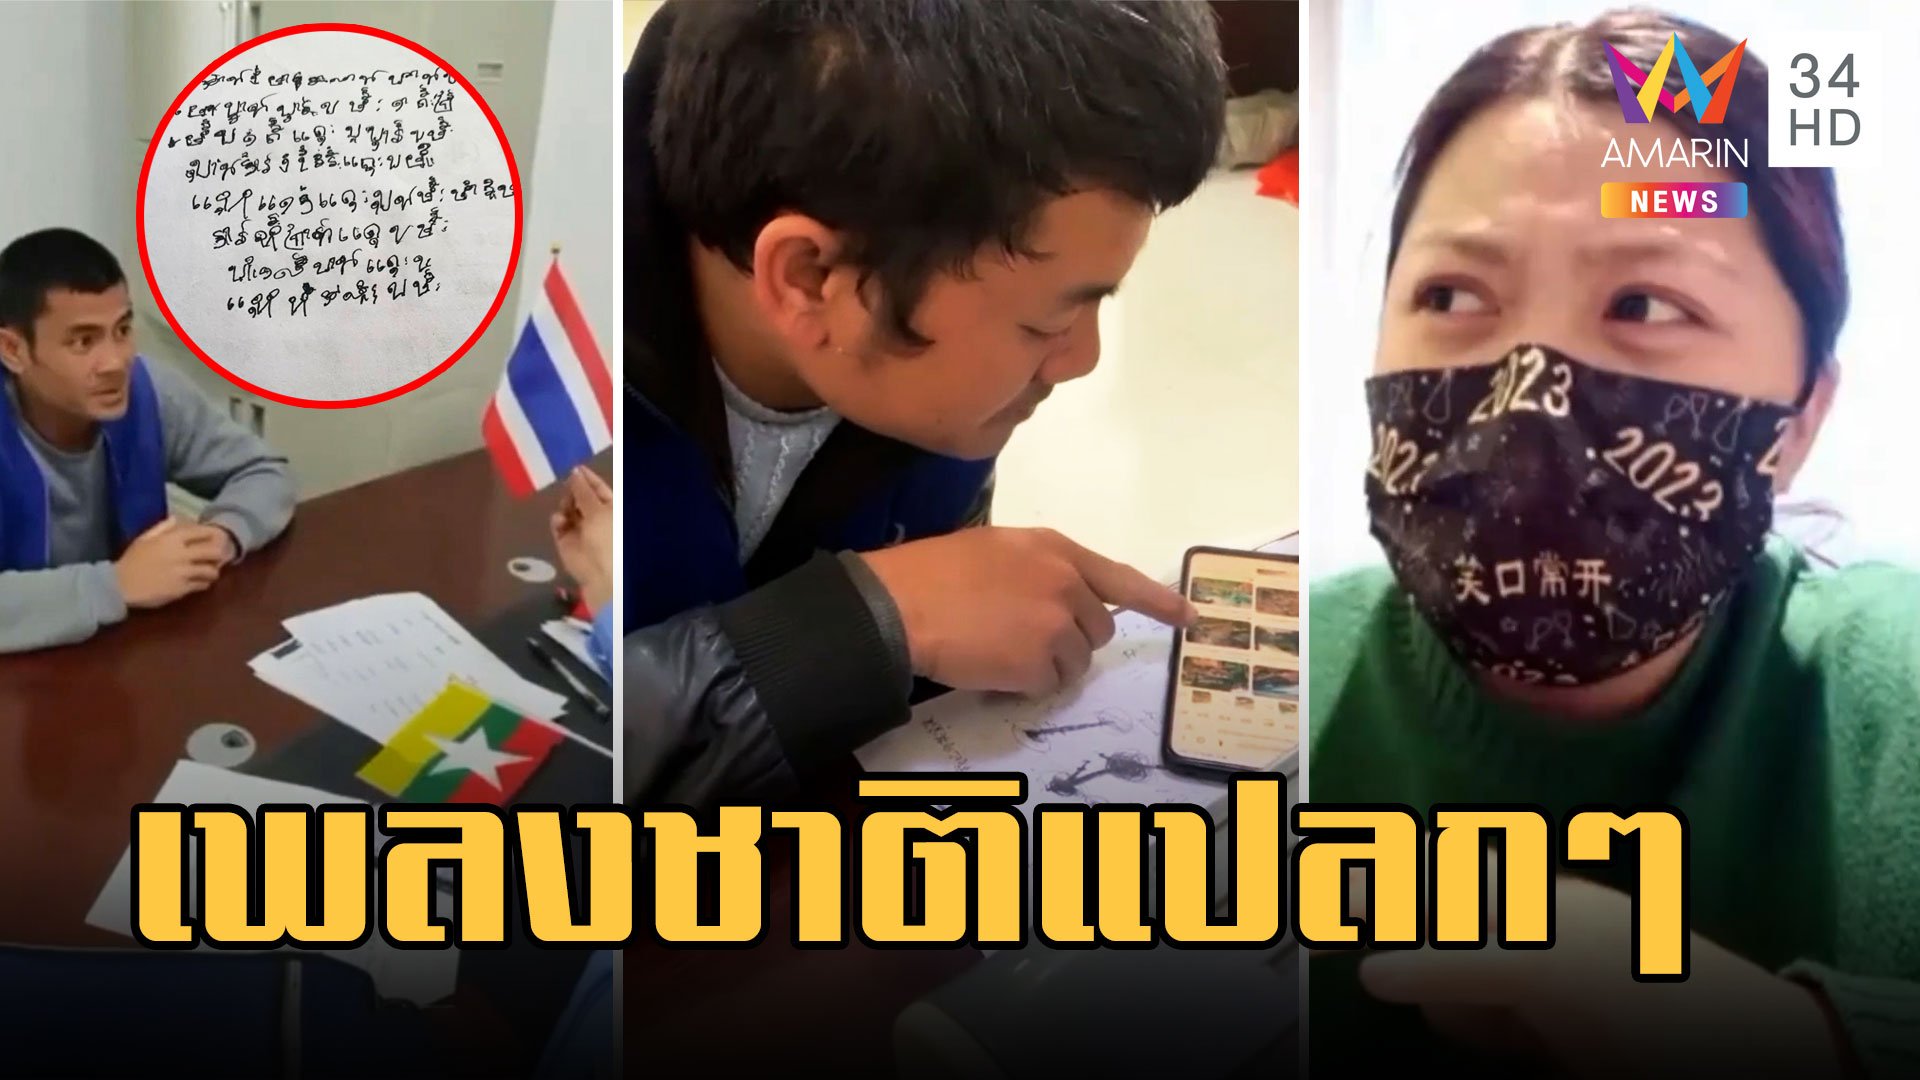 หนุ่มอ้างเป็นคนไทยถูกจับที่จีน ให้ร้องเพลงชาติแต่เอ๊ะฟังแล้วแปลกๆ | ข่าวอรุณอมรินทร์ | 13 มี.ค. 66 | AMARIN TVHD34